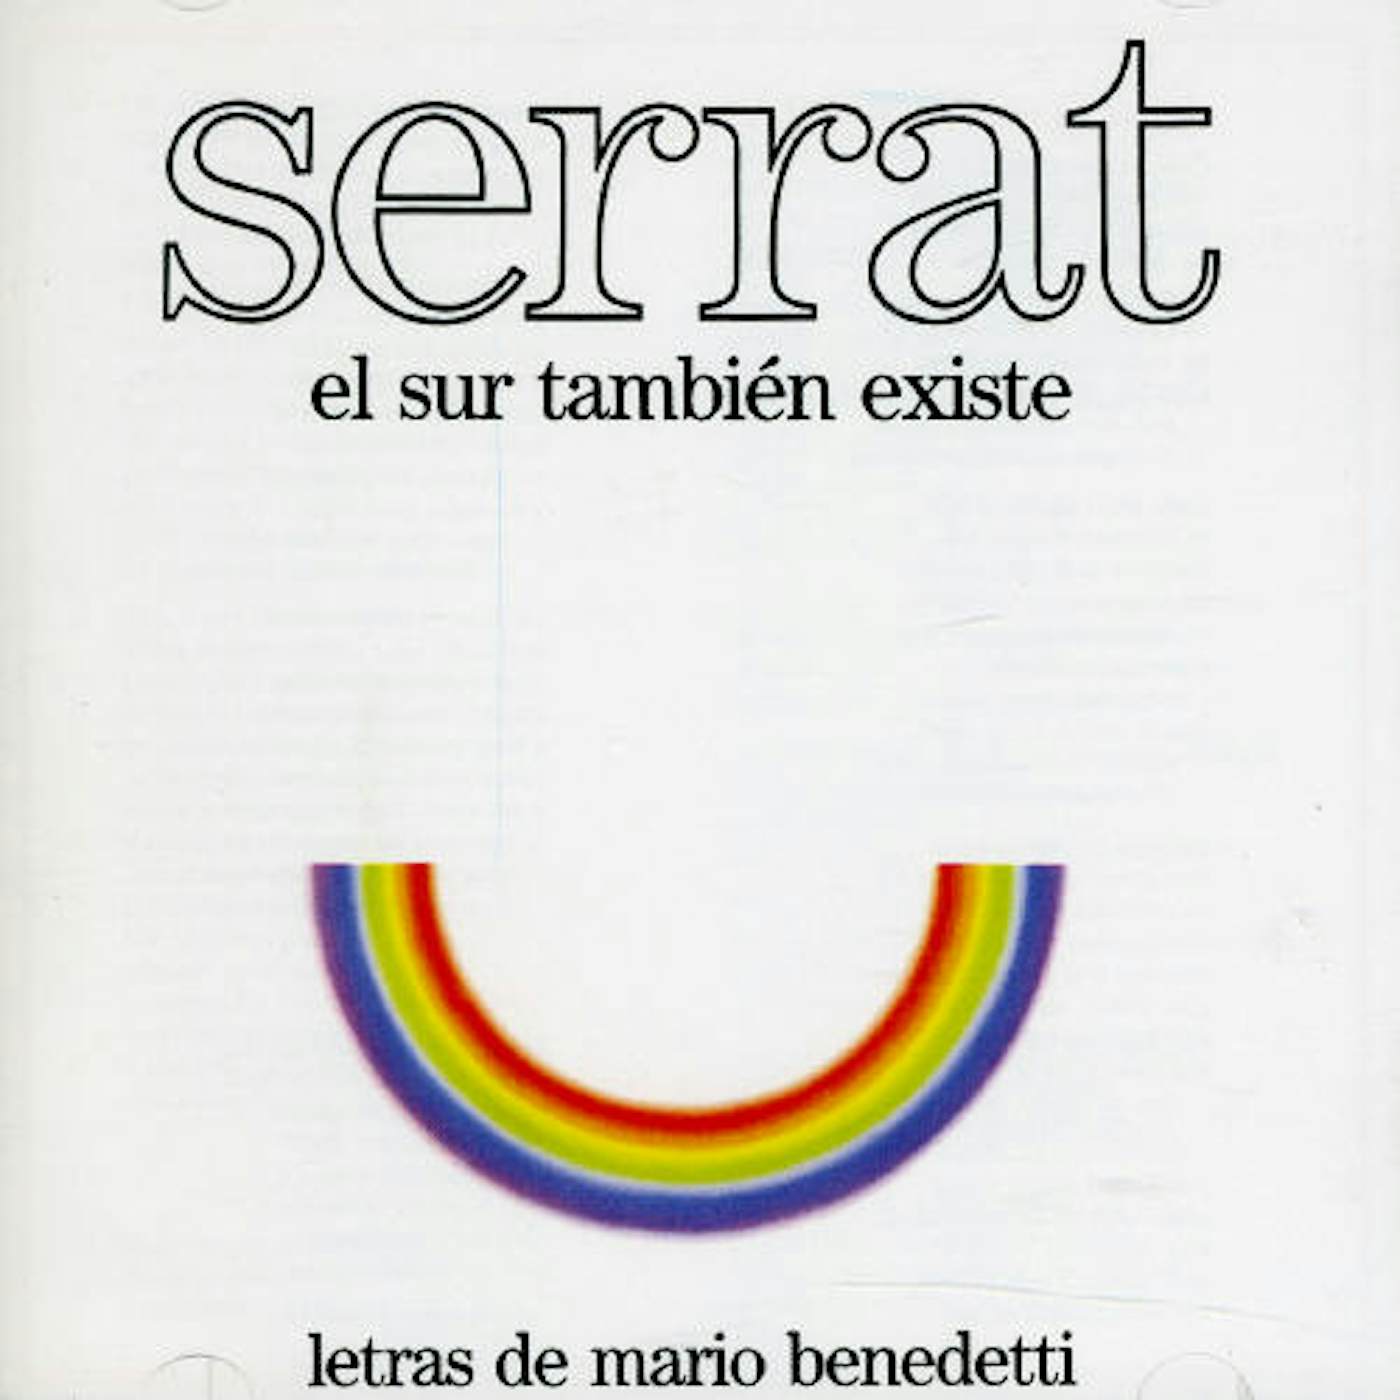 Joan Manuel Serrat SUR TAMBIEN EXISTE CD